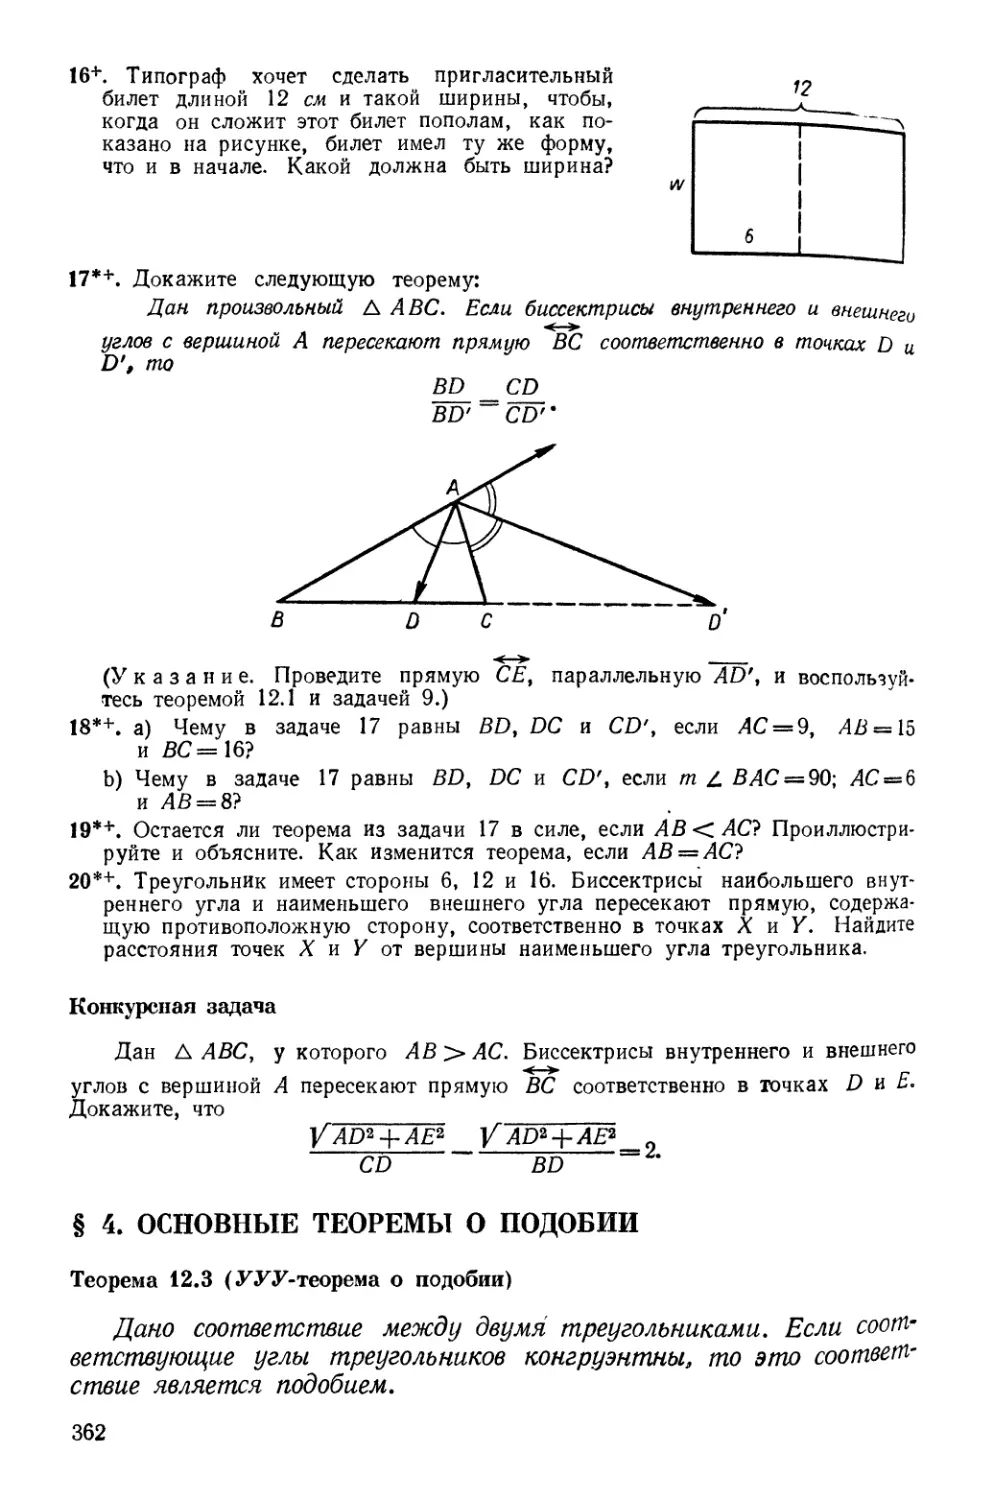 § 4. Основные теоремы о подобии